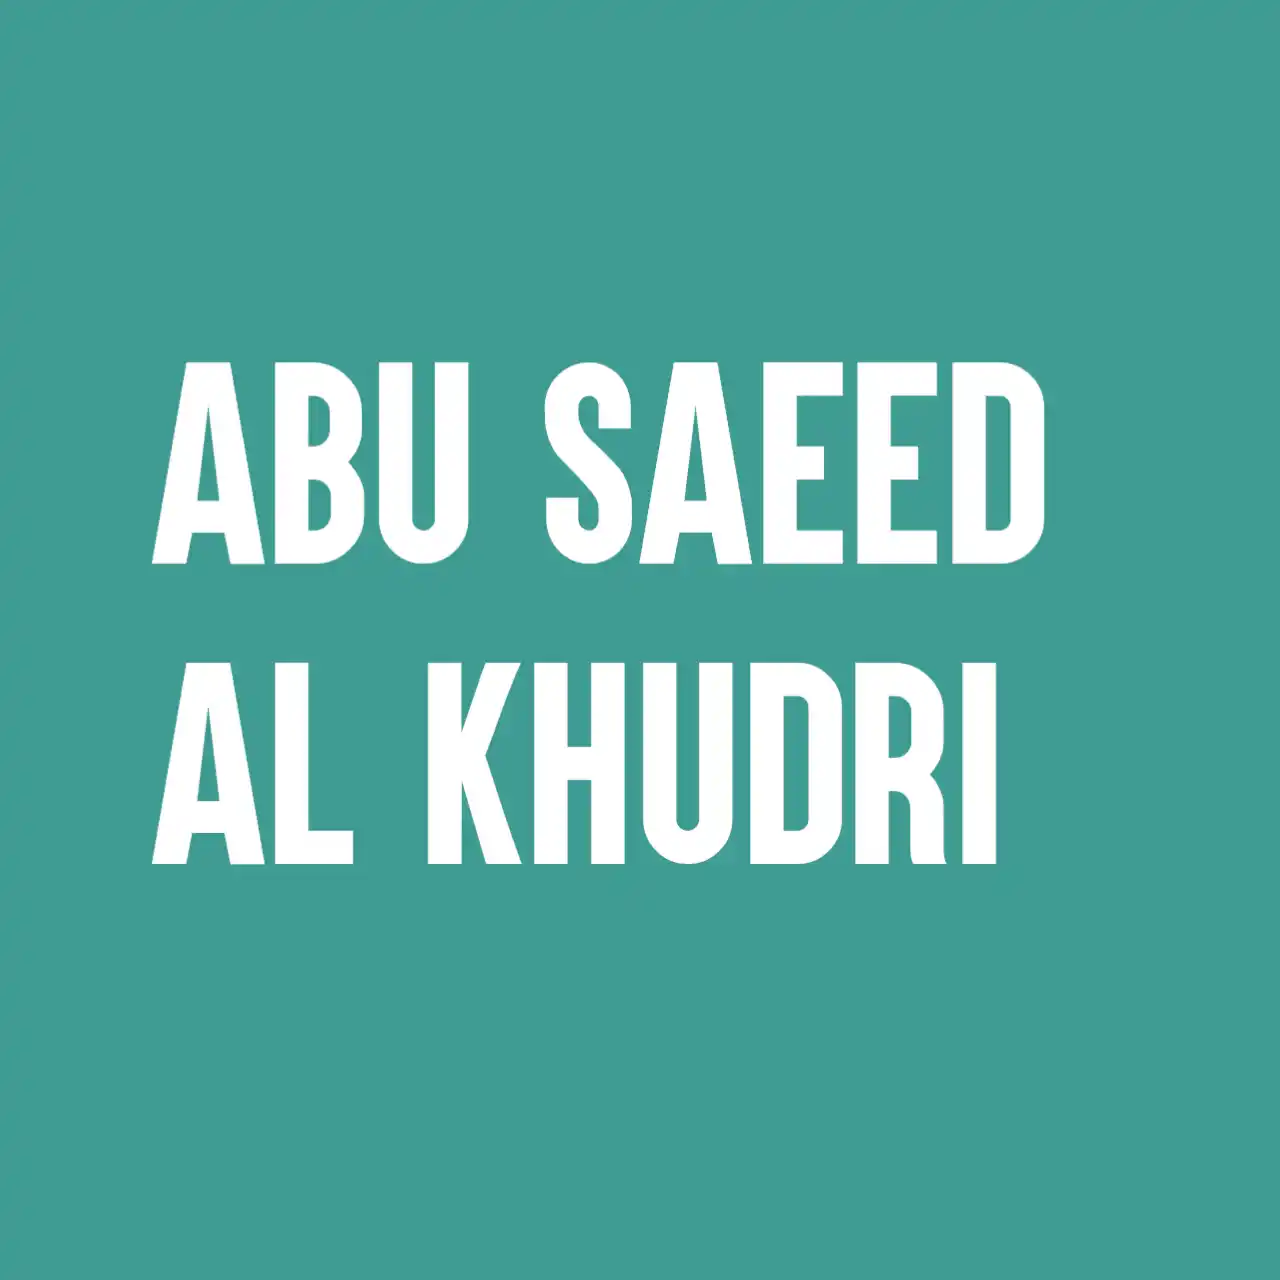 Abu Saeed Al Khudri